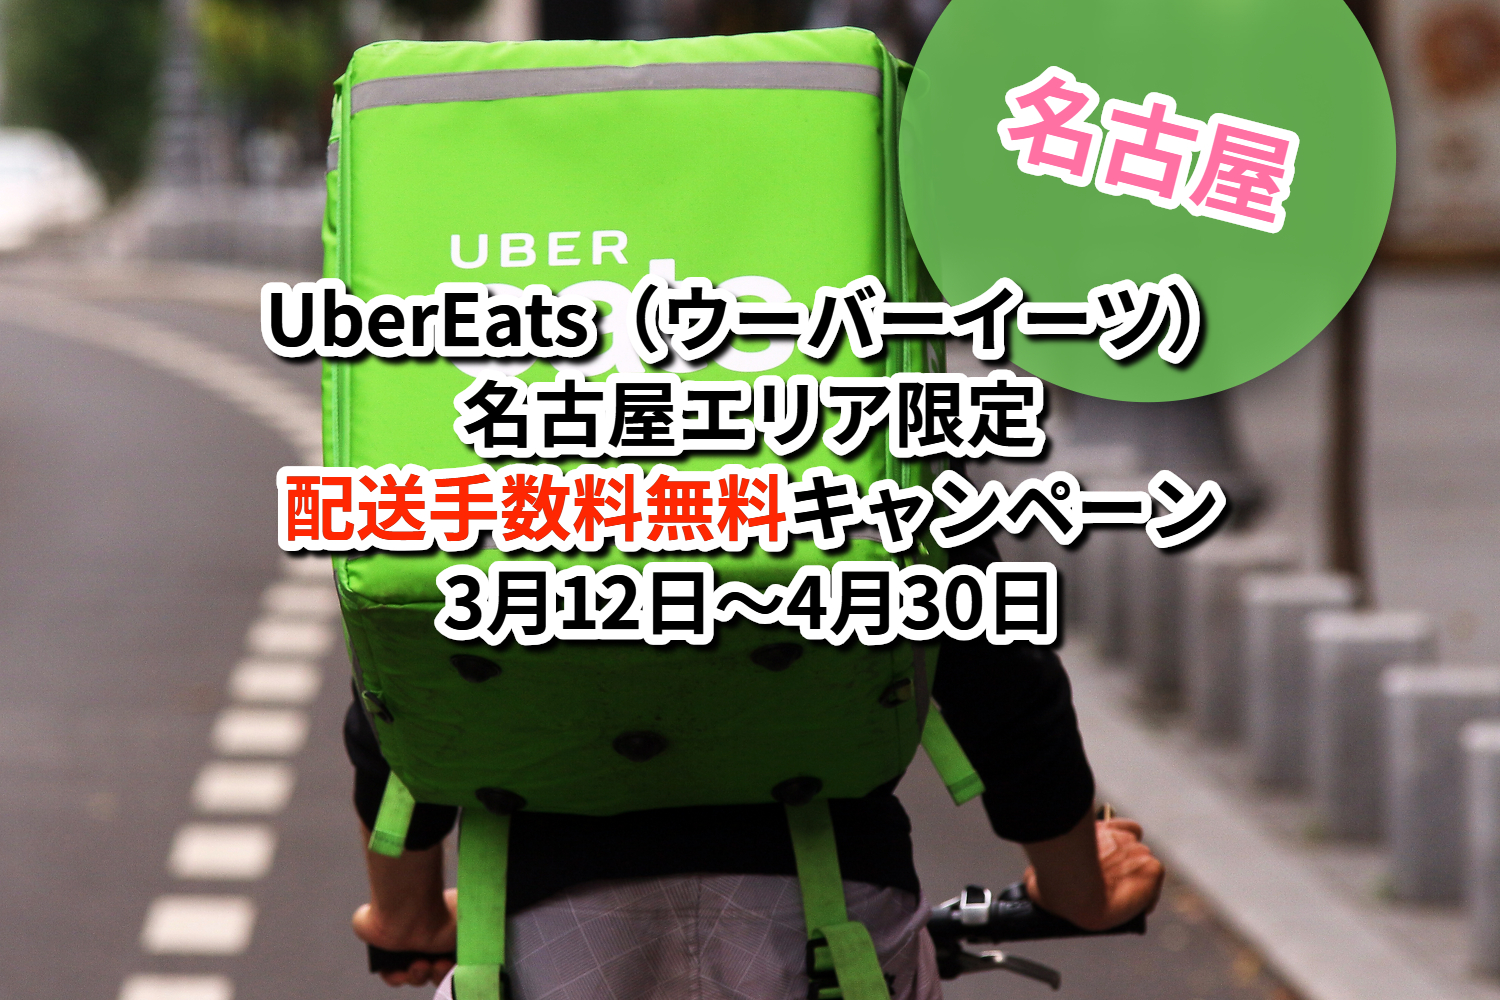 名古屋市 Uber Eats ウーバーイーツ 配送手数料無料キャンペーン